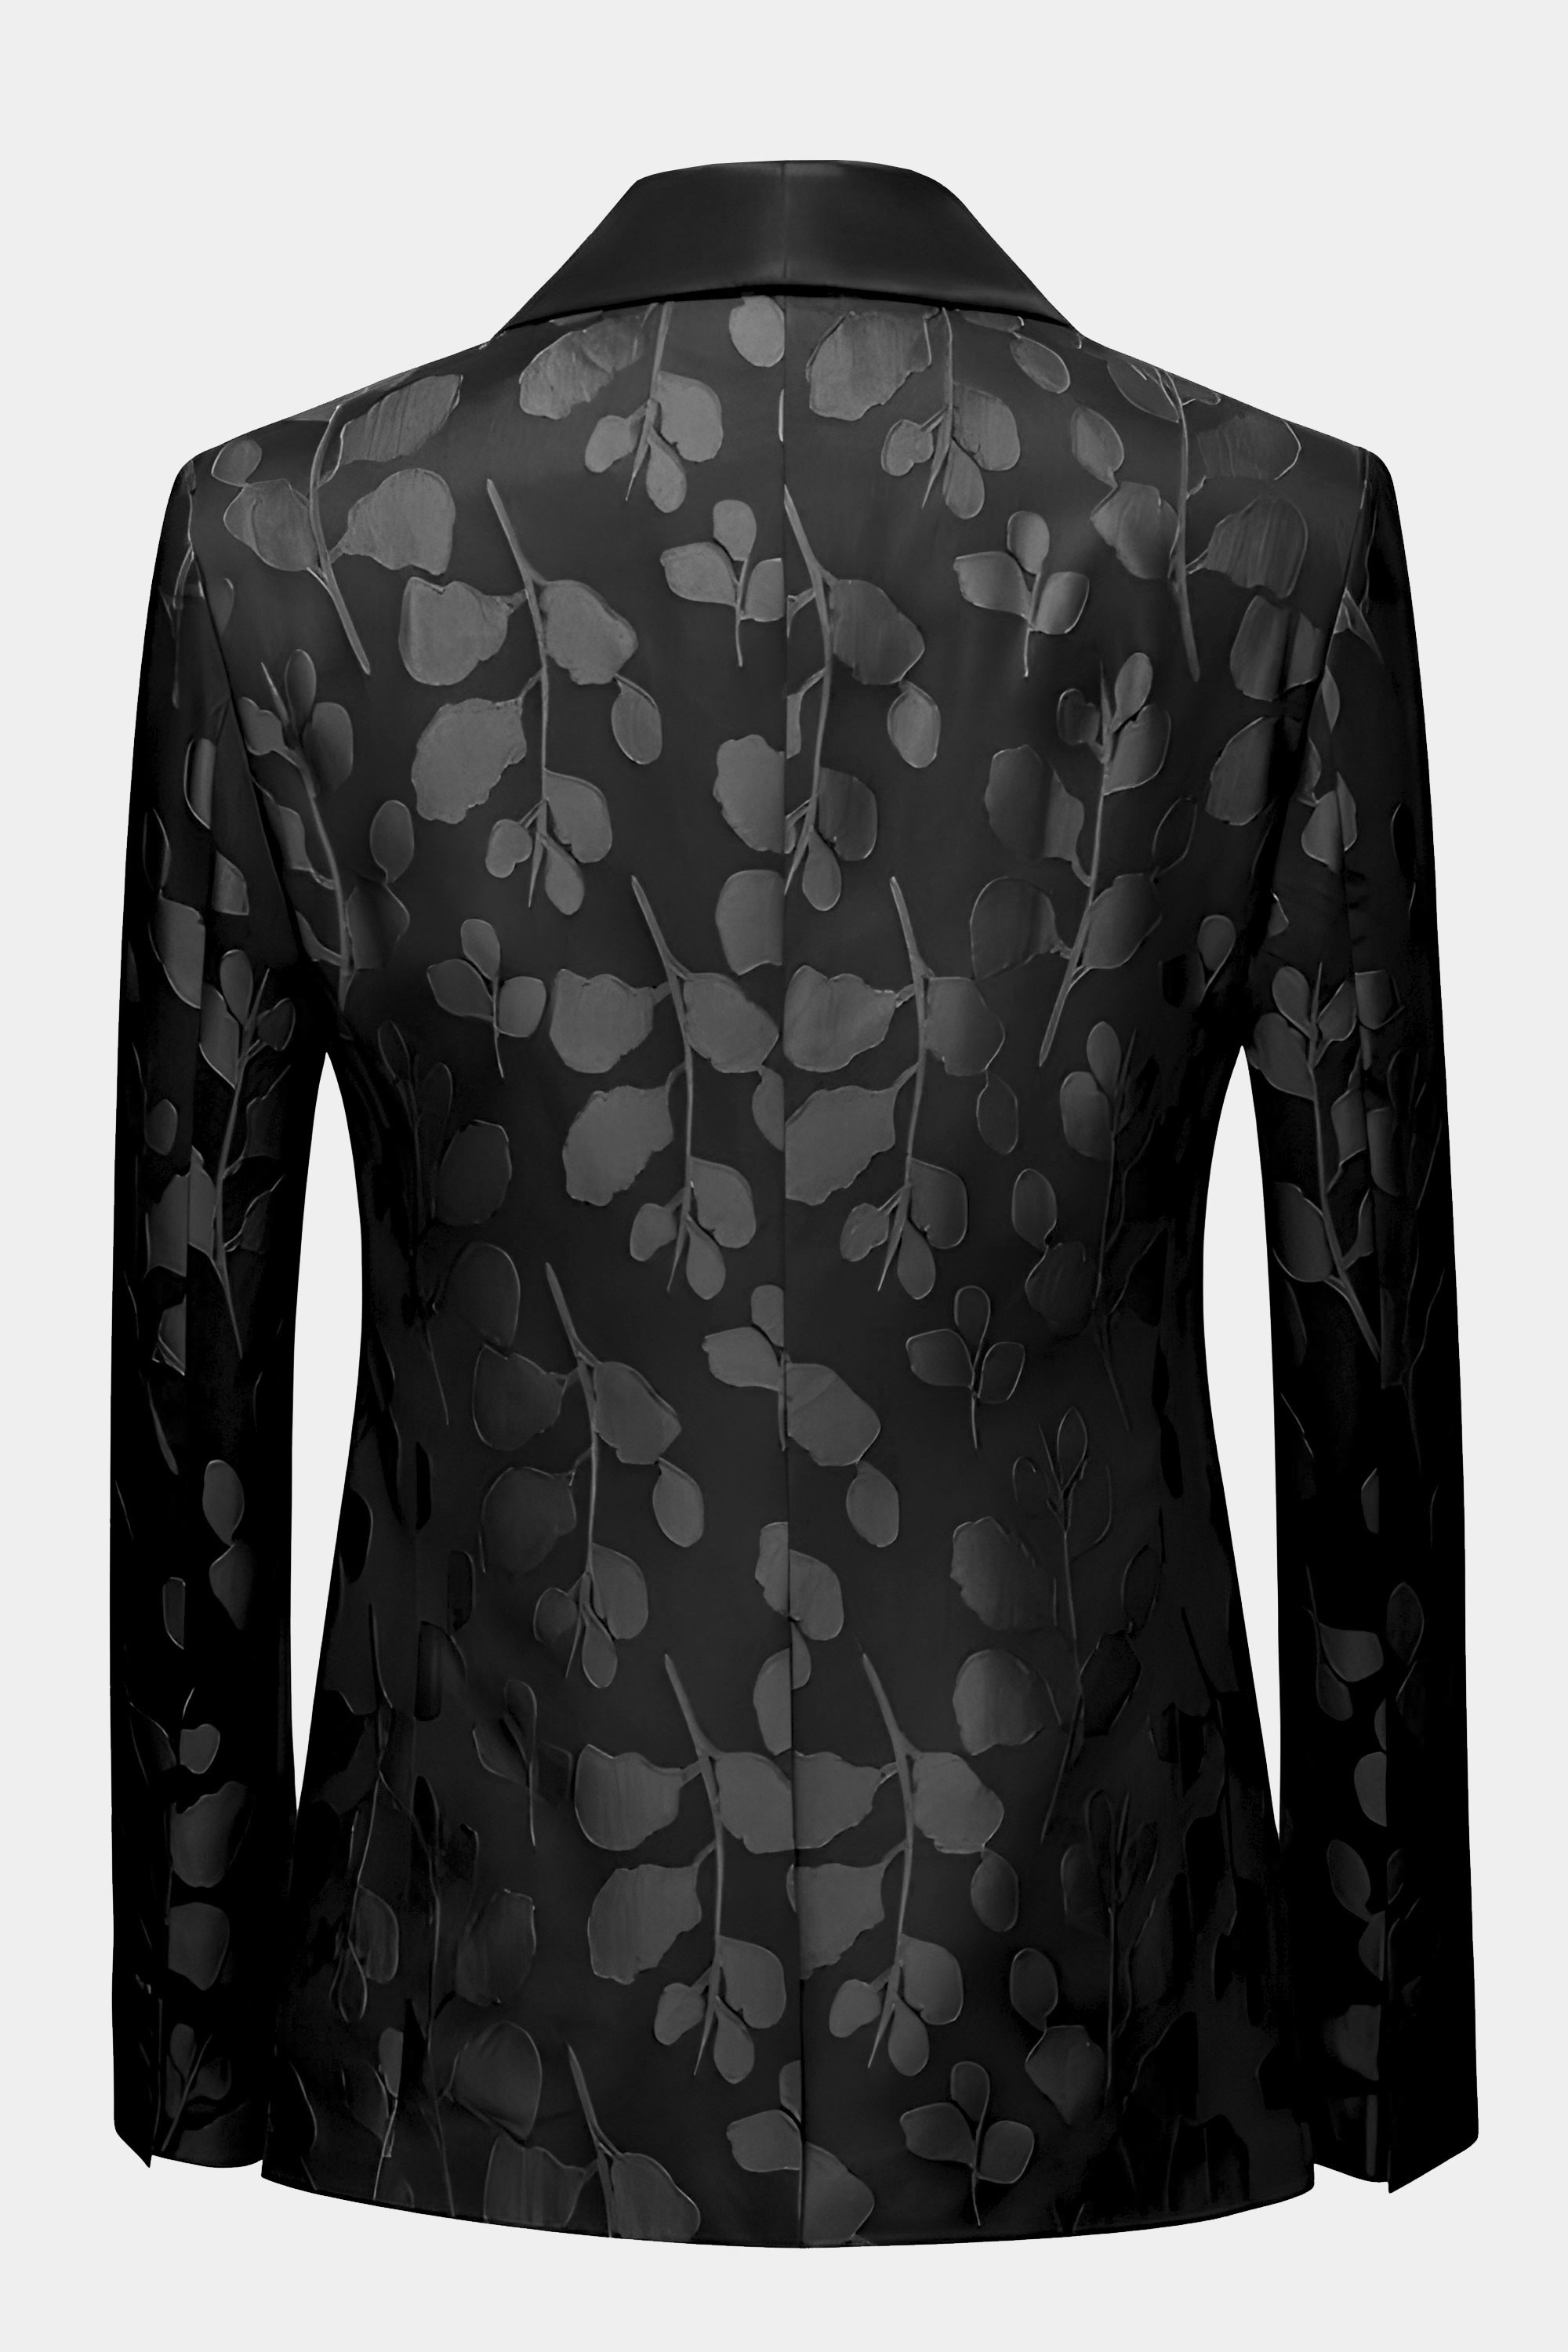 Black-on-Black-Tuxedo-JAcket-from-Gentlemansguru.com